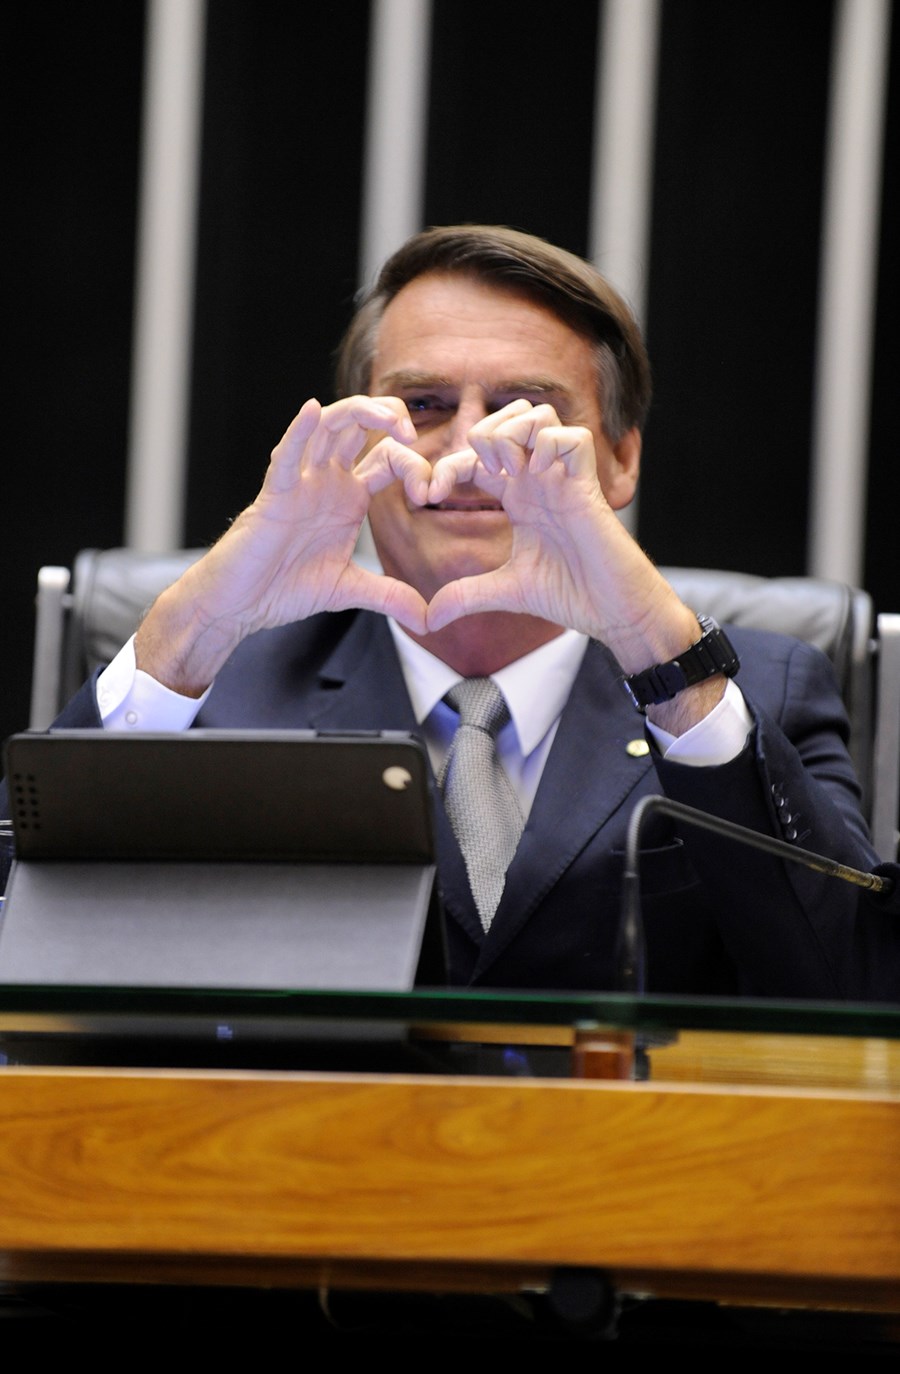 Jair Bolsonaro: O homem mediano assume o poder, Opinião